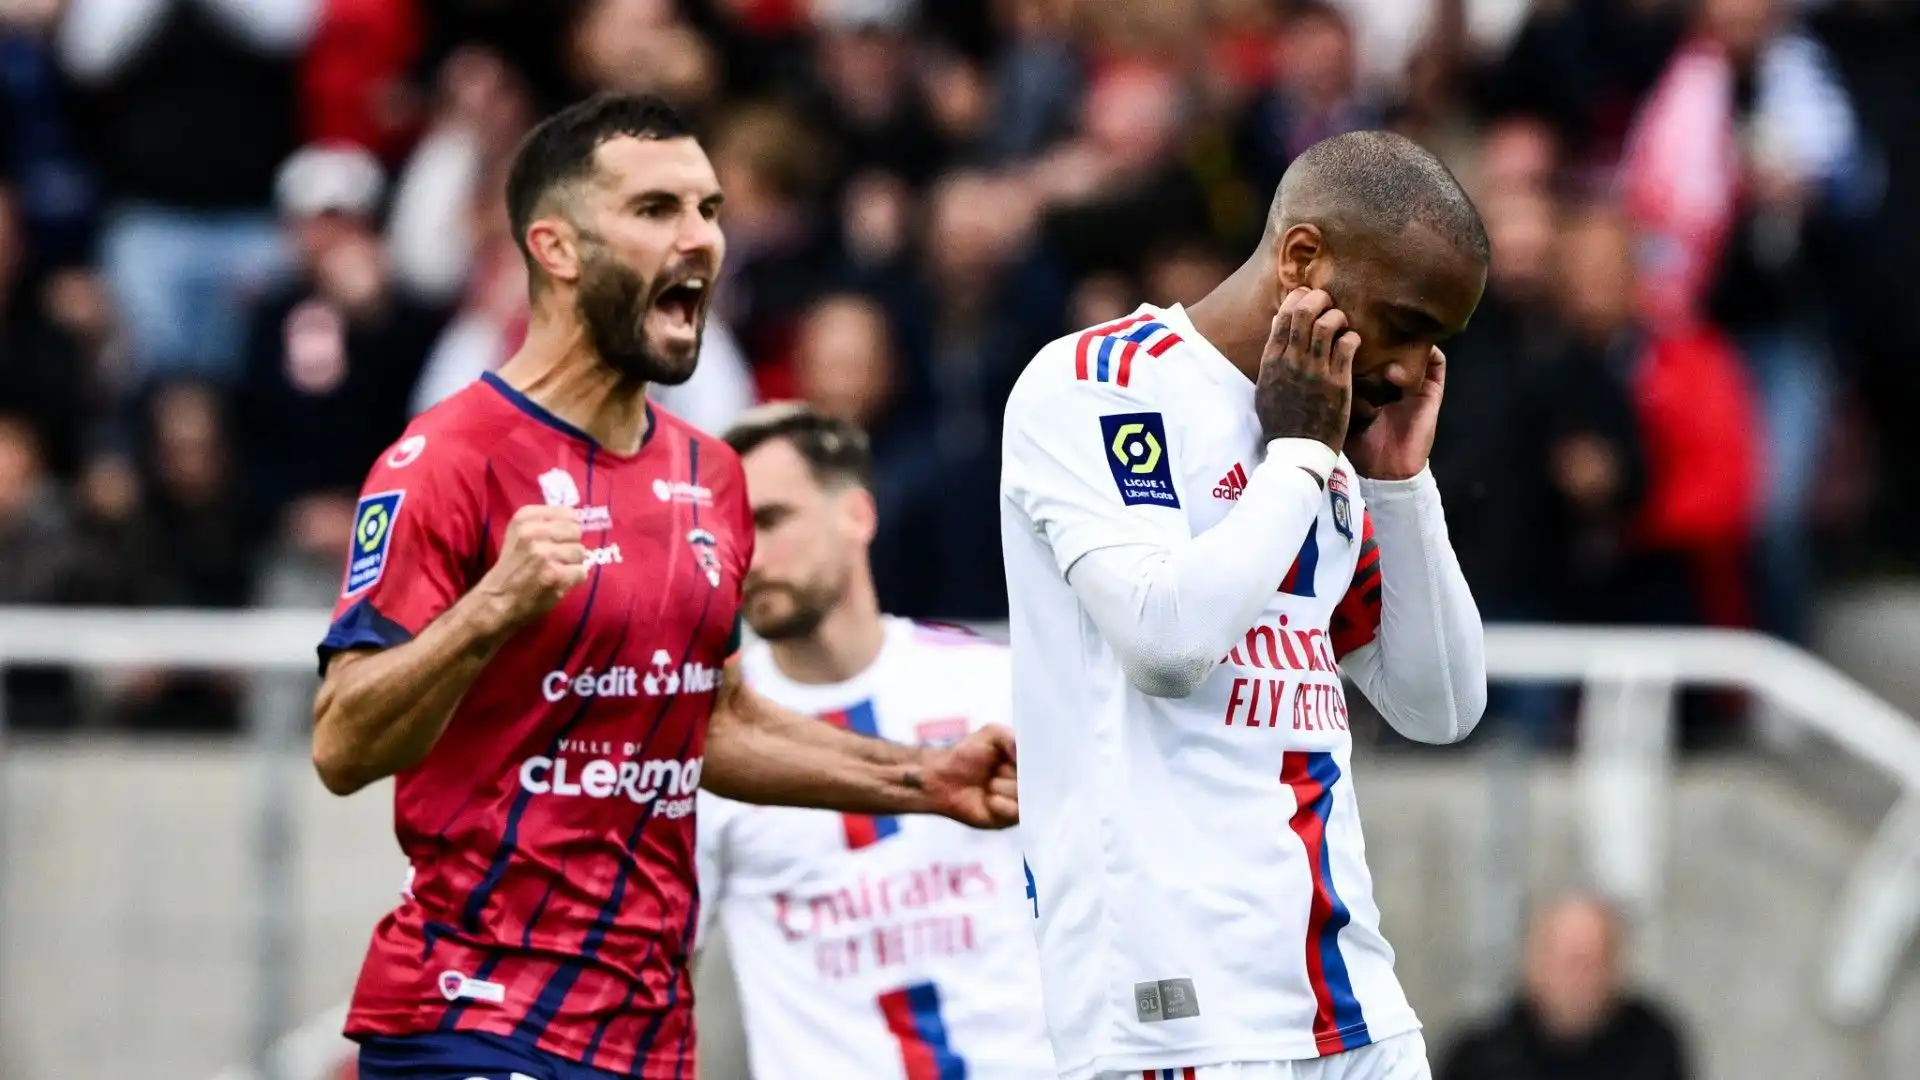 L'attaccante francese dell'Olympique Lione ha sbagliato un calcio di rigore nella partita contro il Clermont